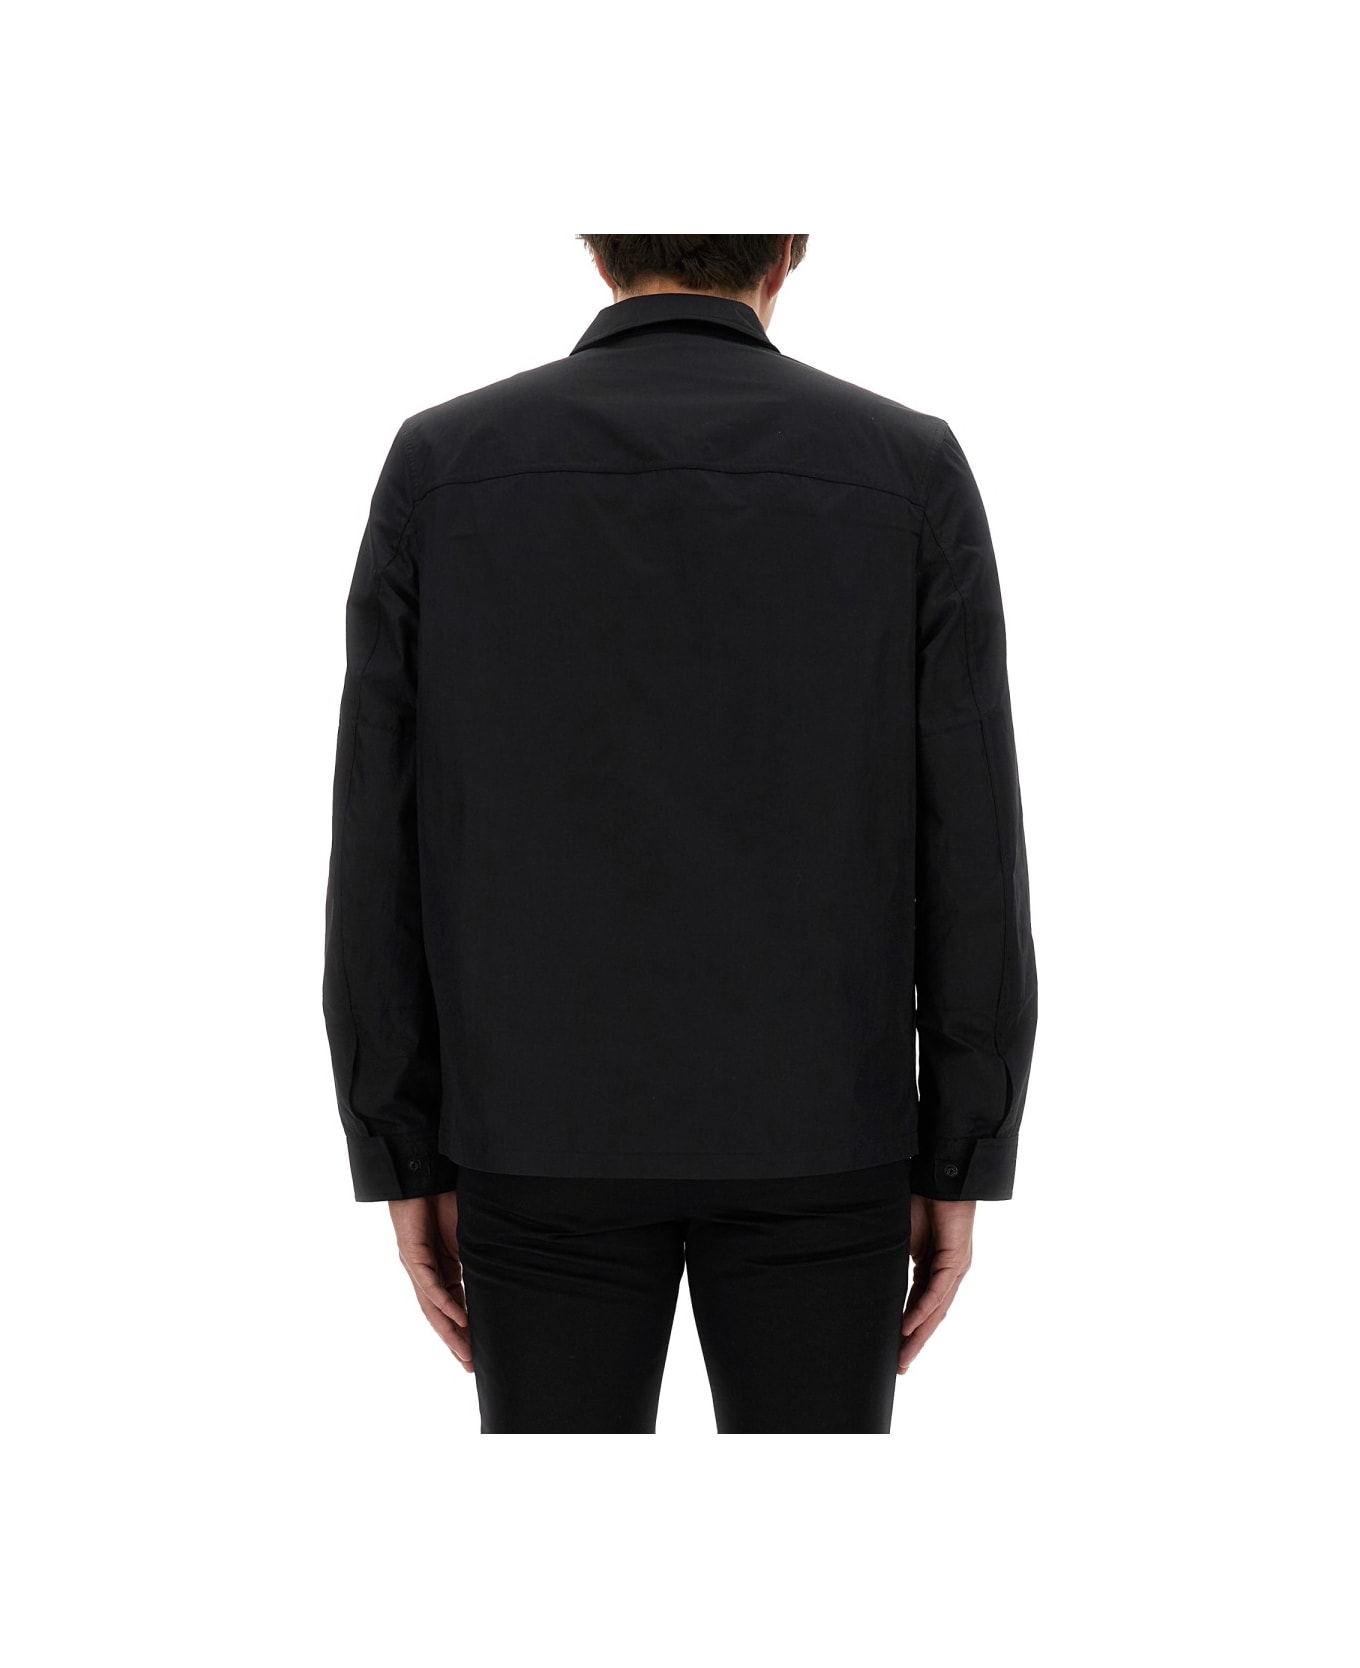 Belstaff Shirt Jacket - BLACK